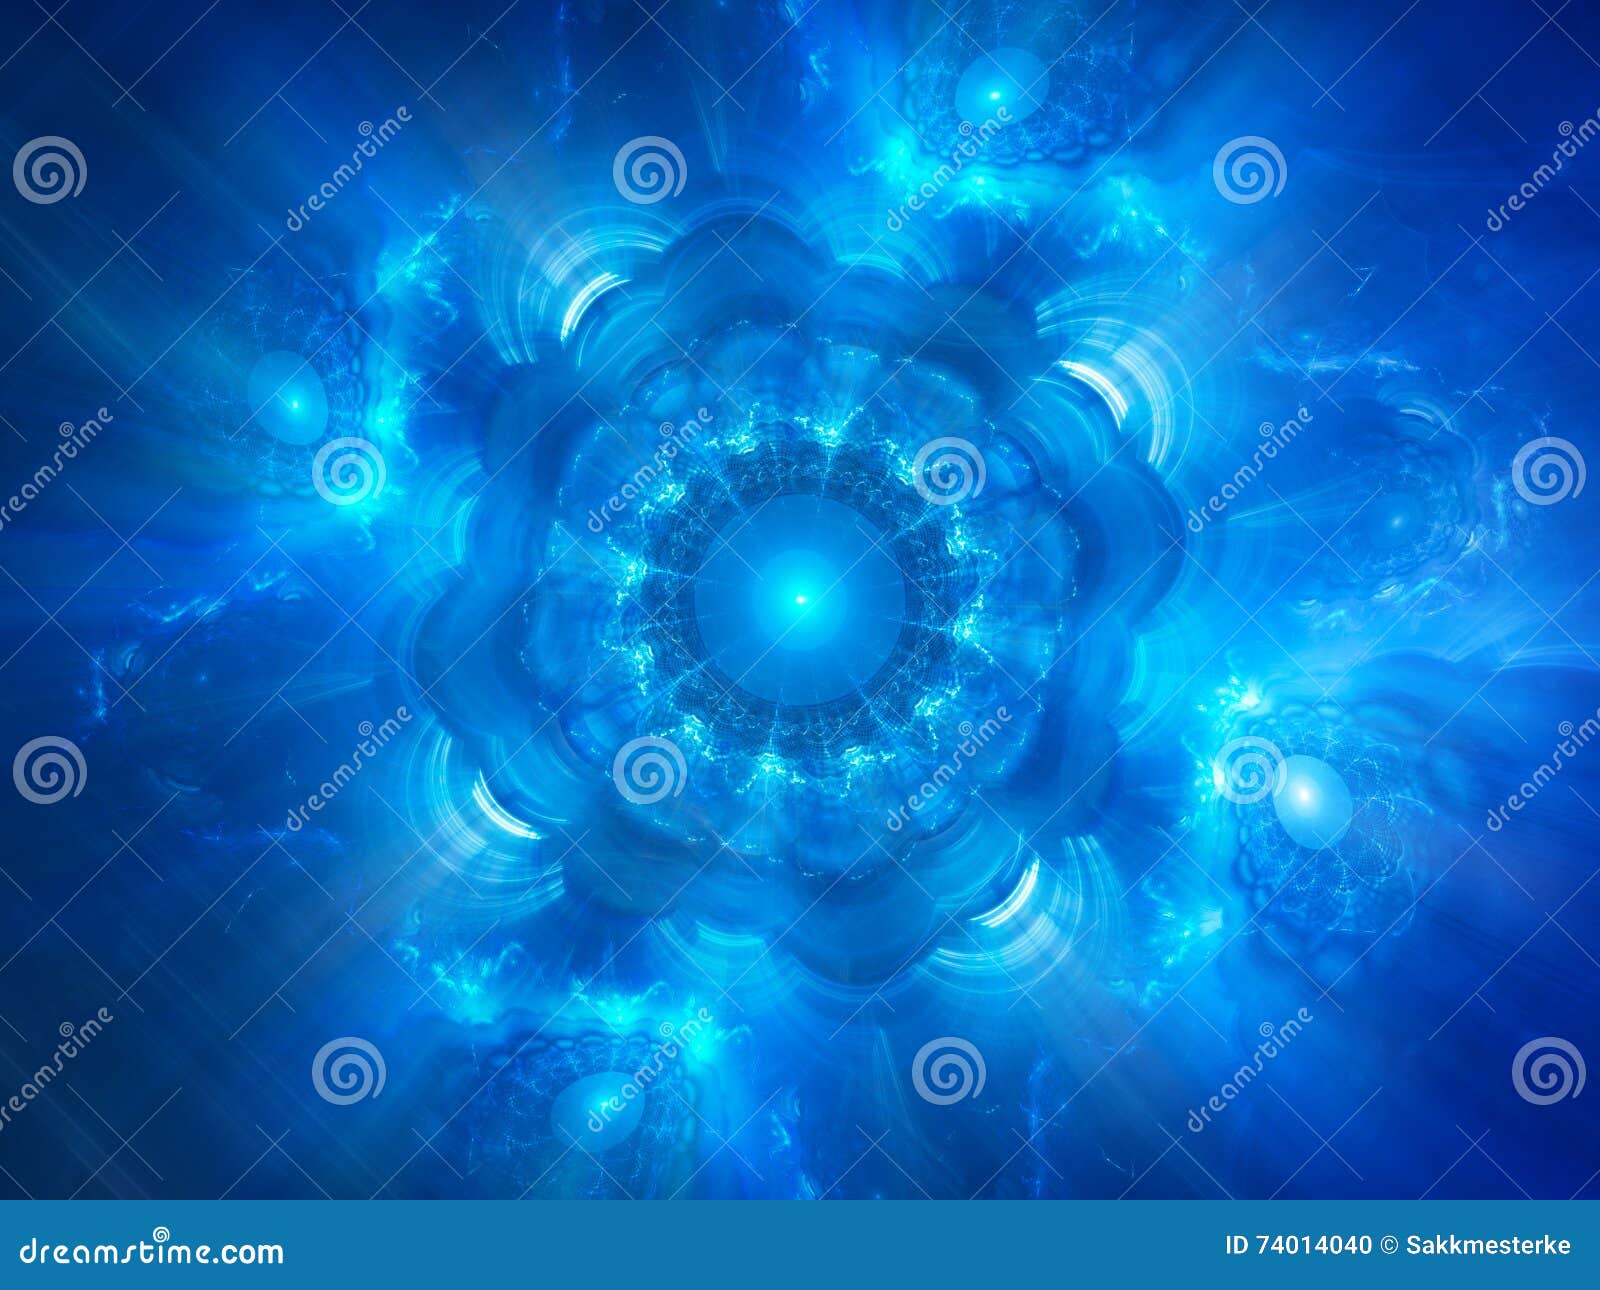 blue glowing space object genesis